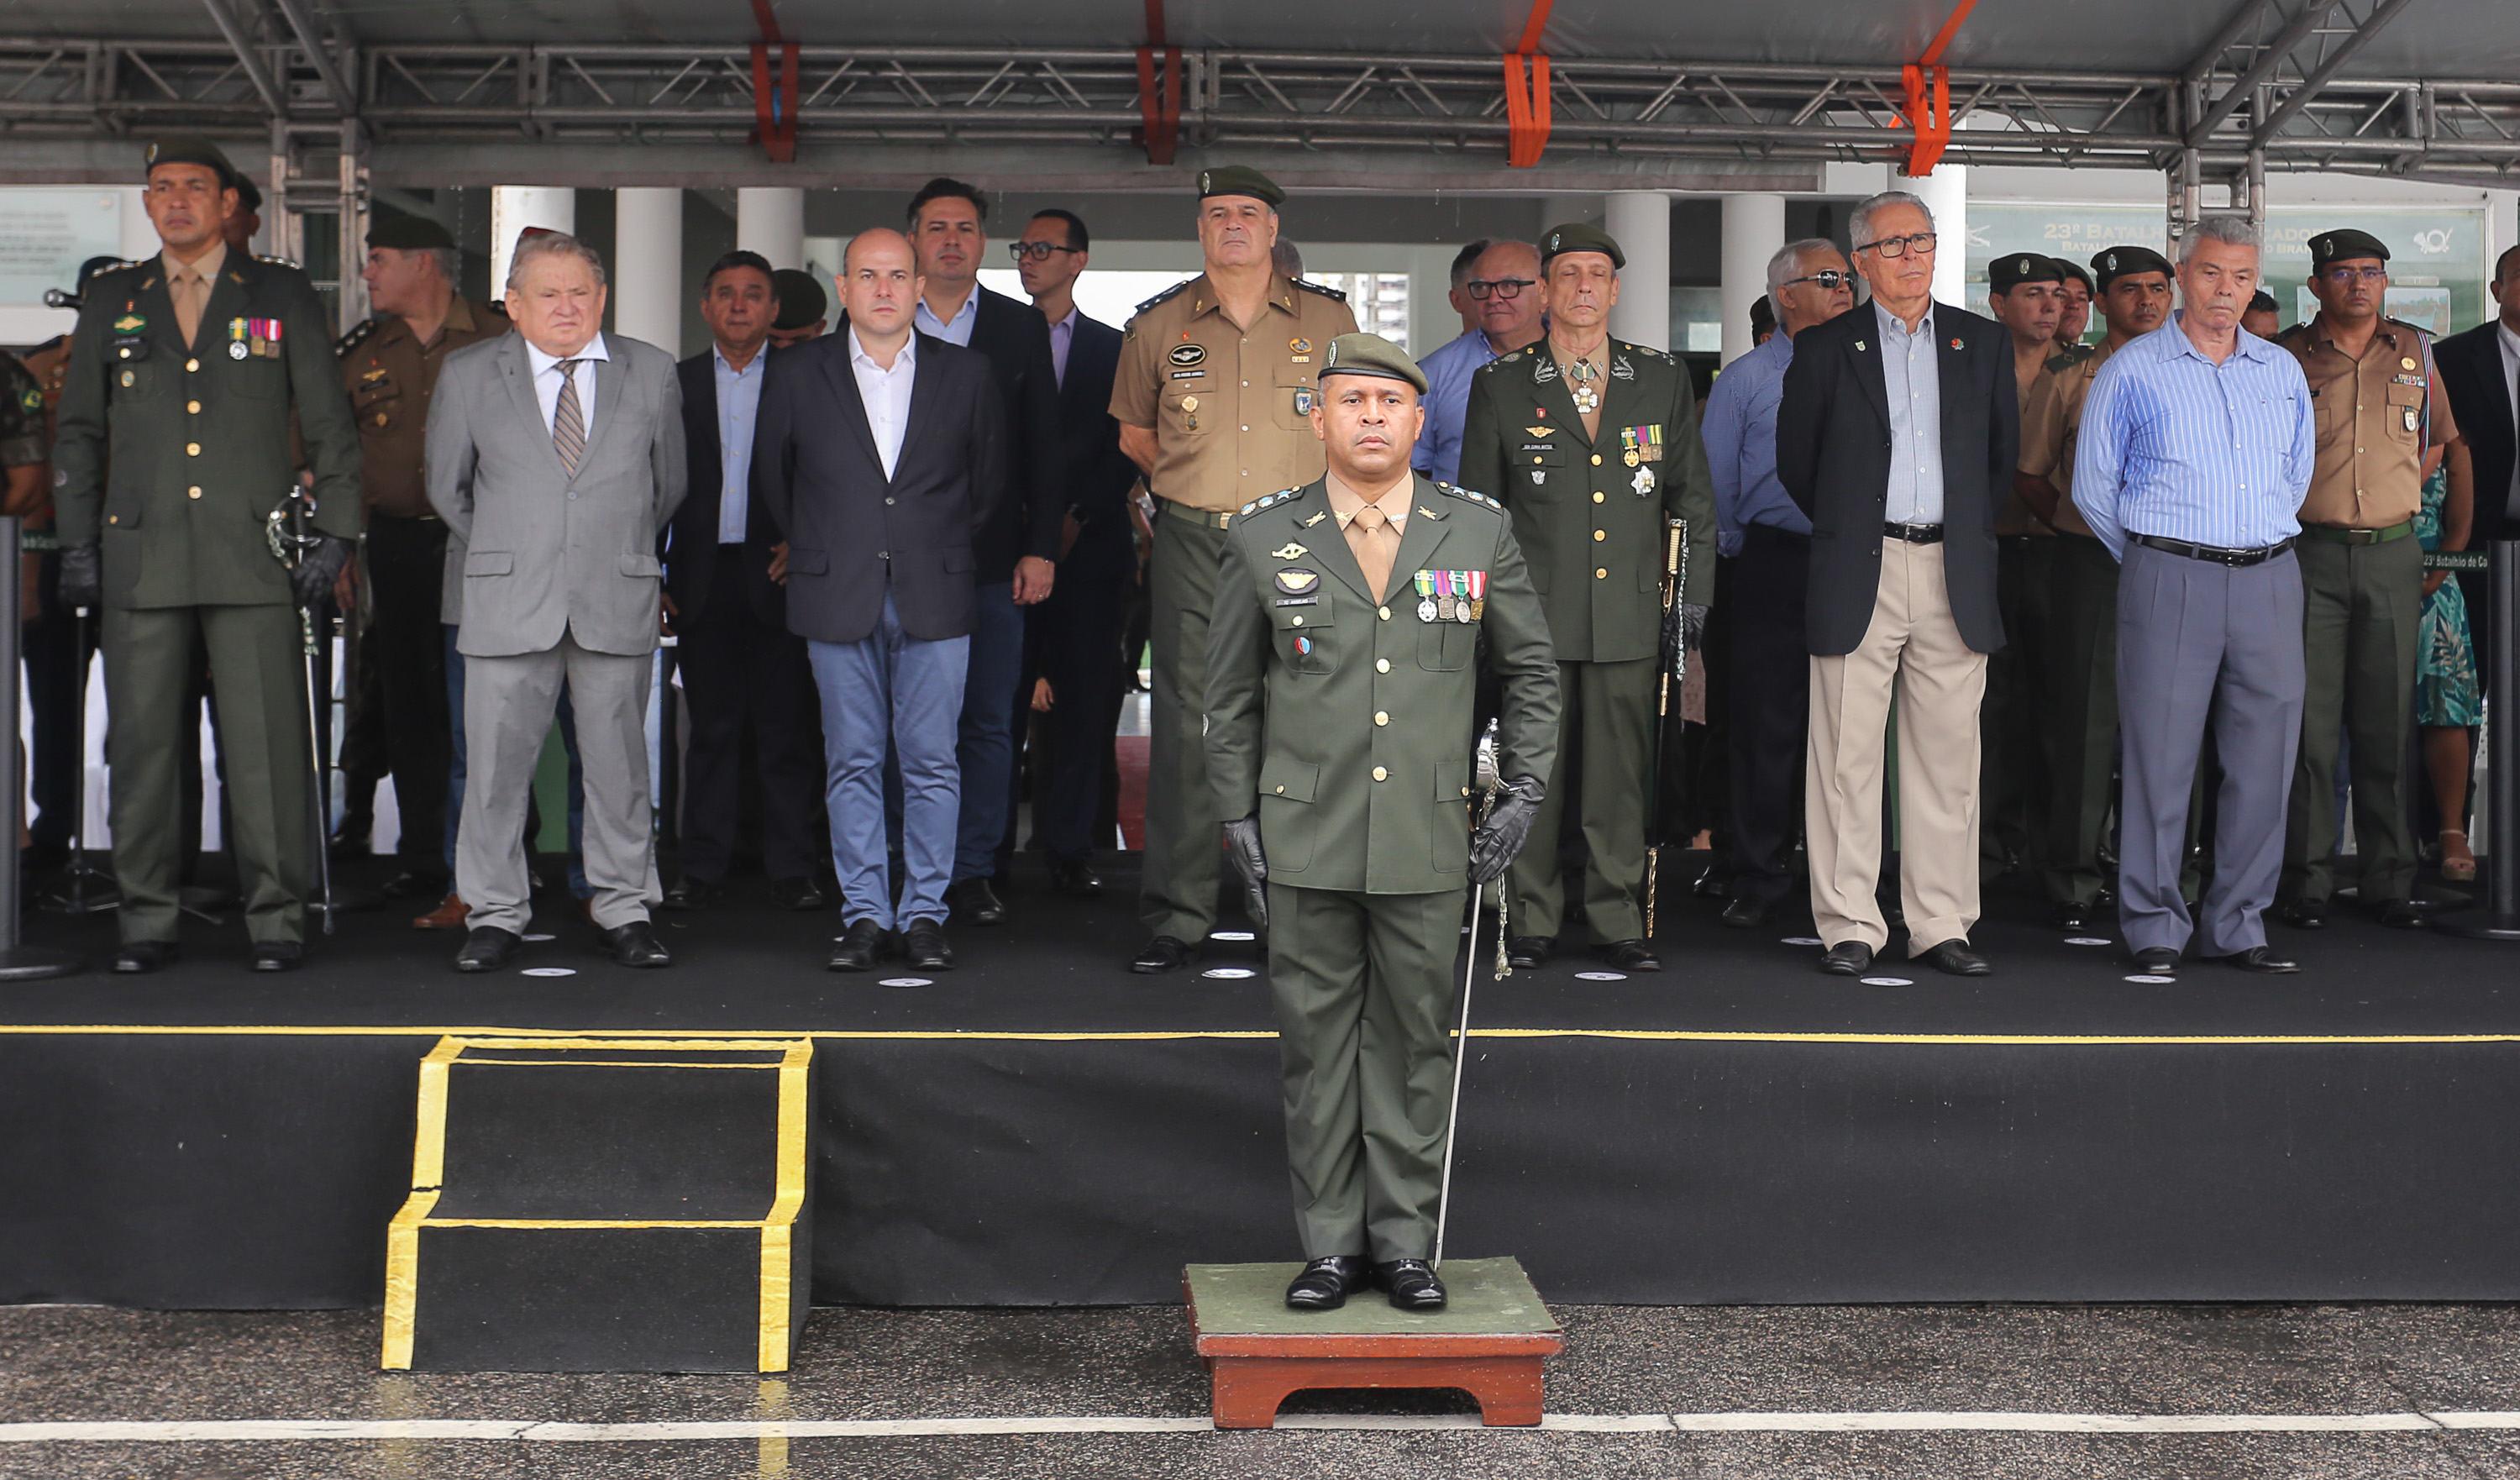 prefeito em pé em palco ao lado de senhores militares e secretários